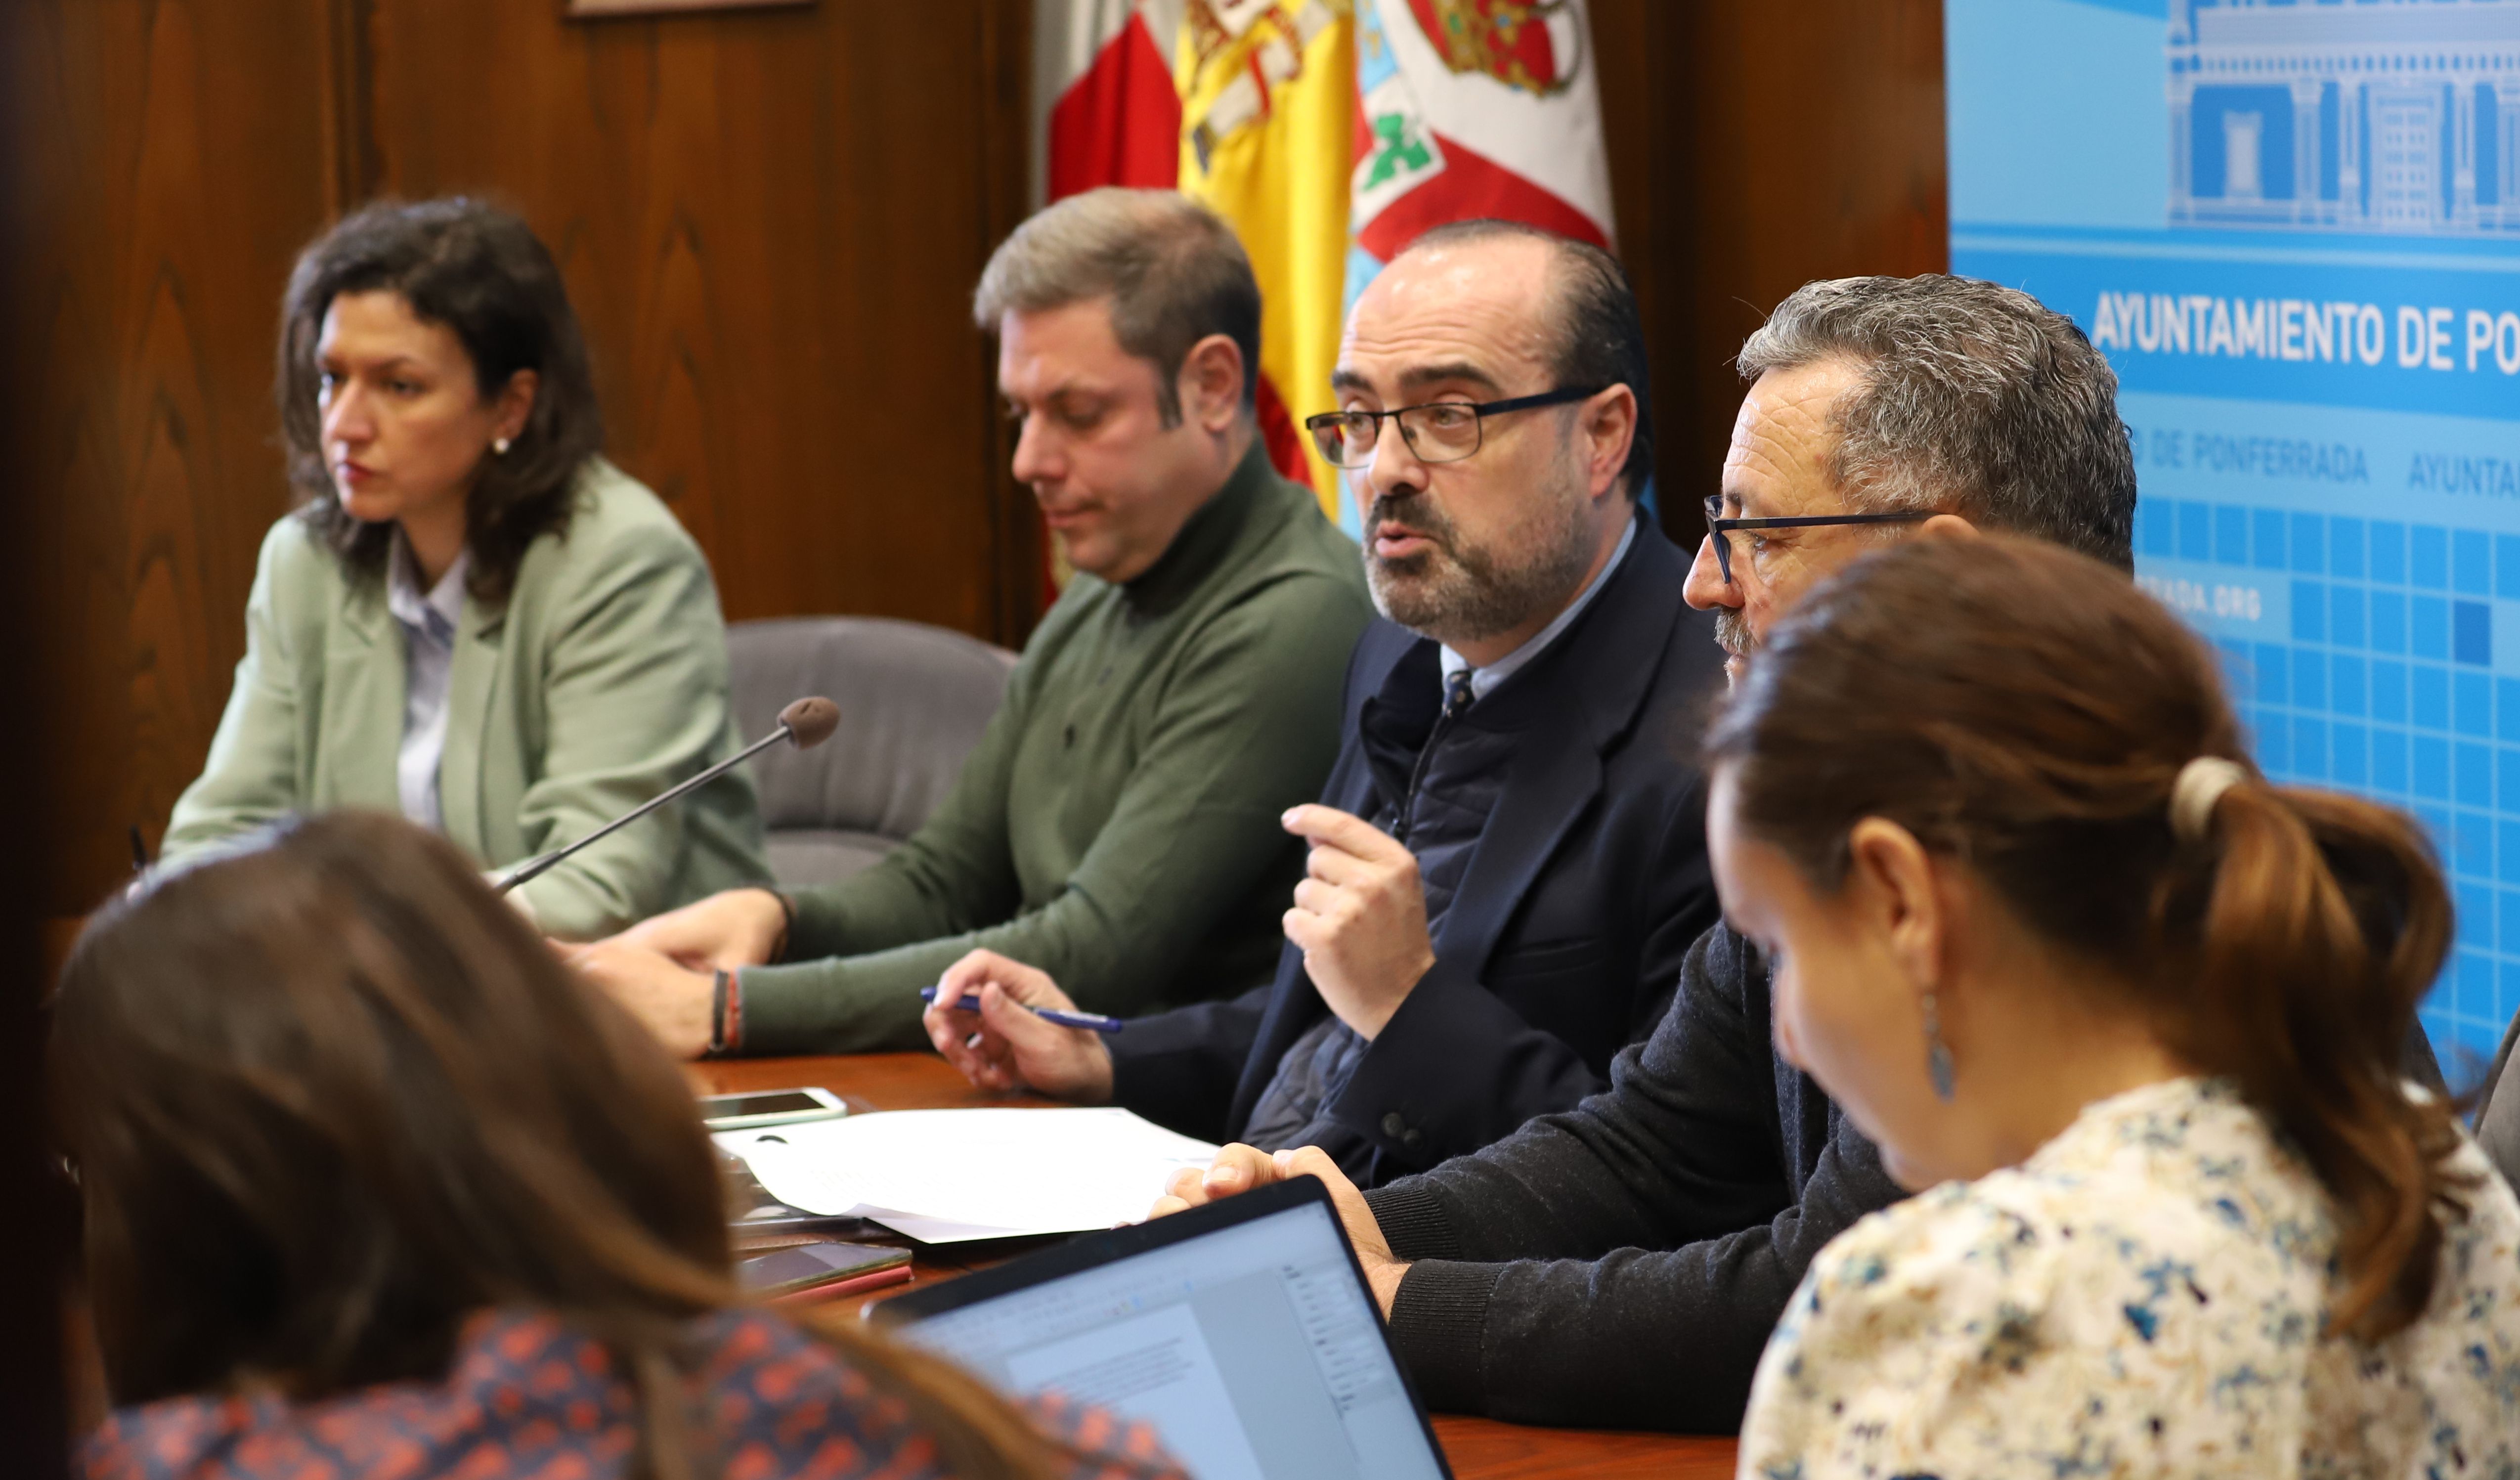 El alcalde Marco Morala, en el centro de la imagen. | César Sánchez (Ical)